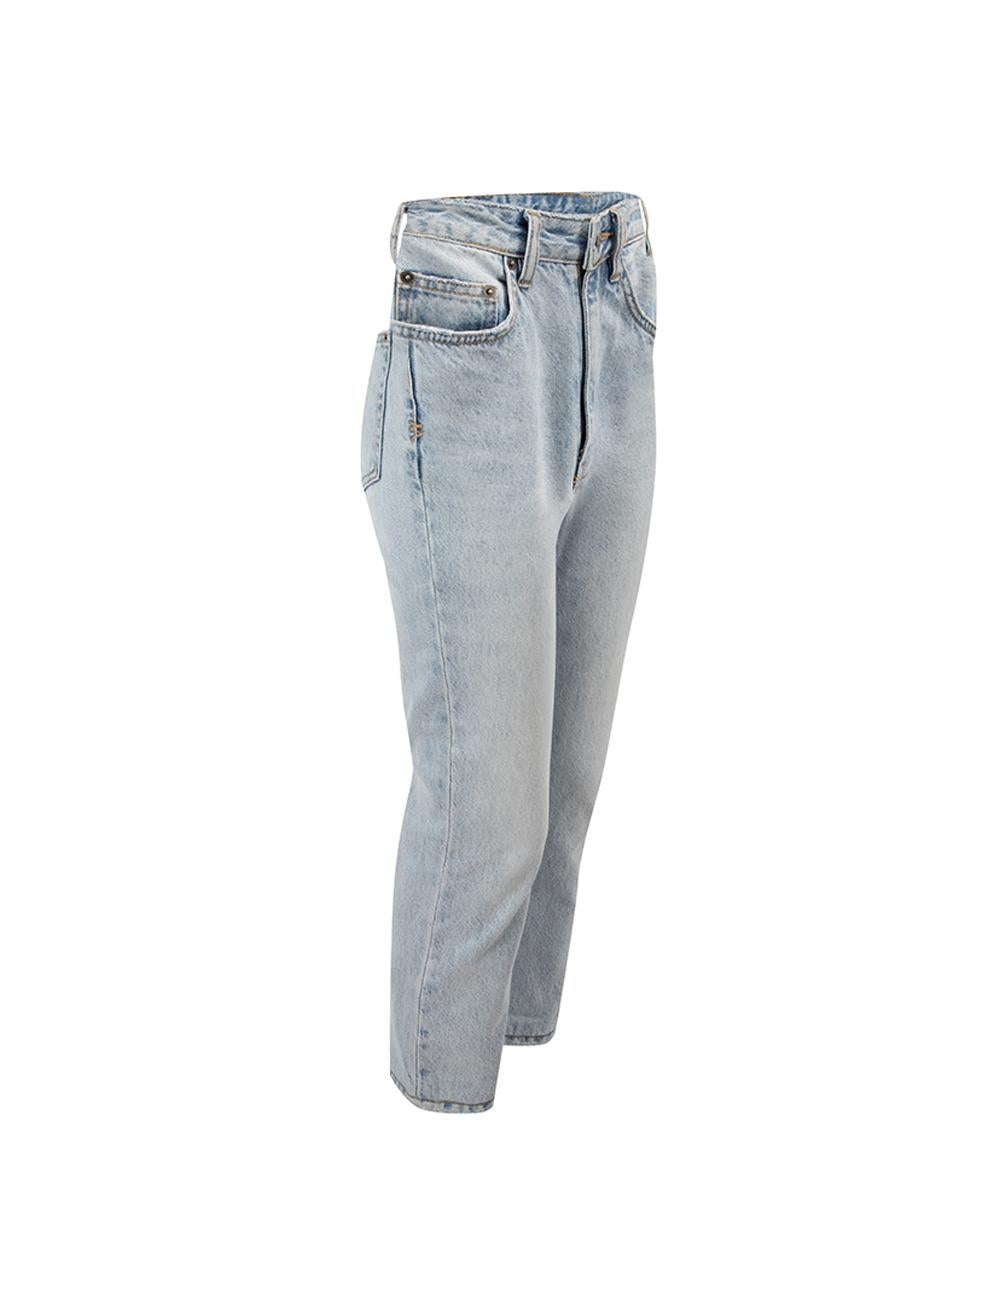 CONDIT ist sehr gut. Kaum sichtbare Abnutzungserscheinungen an der Jeans sind an diesem gebrauchten Ksubi Designer-Wiederverkaufsartikel zu erkennen. 



Einzelheiten


Hellblau

Denim

Hose mit geradem Bein

Hochhaus

Distressed-Akzent am